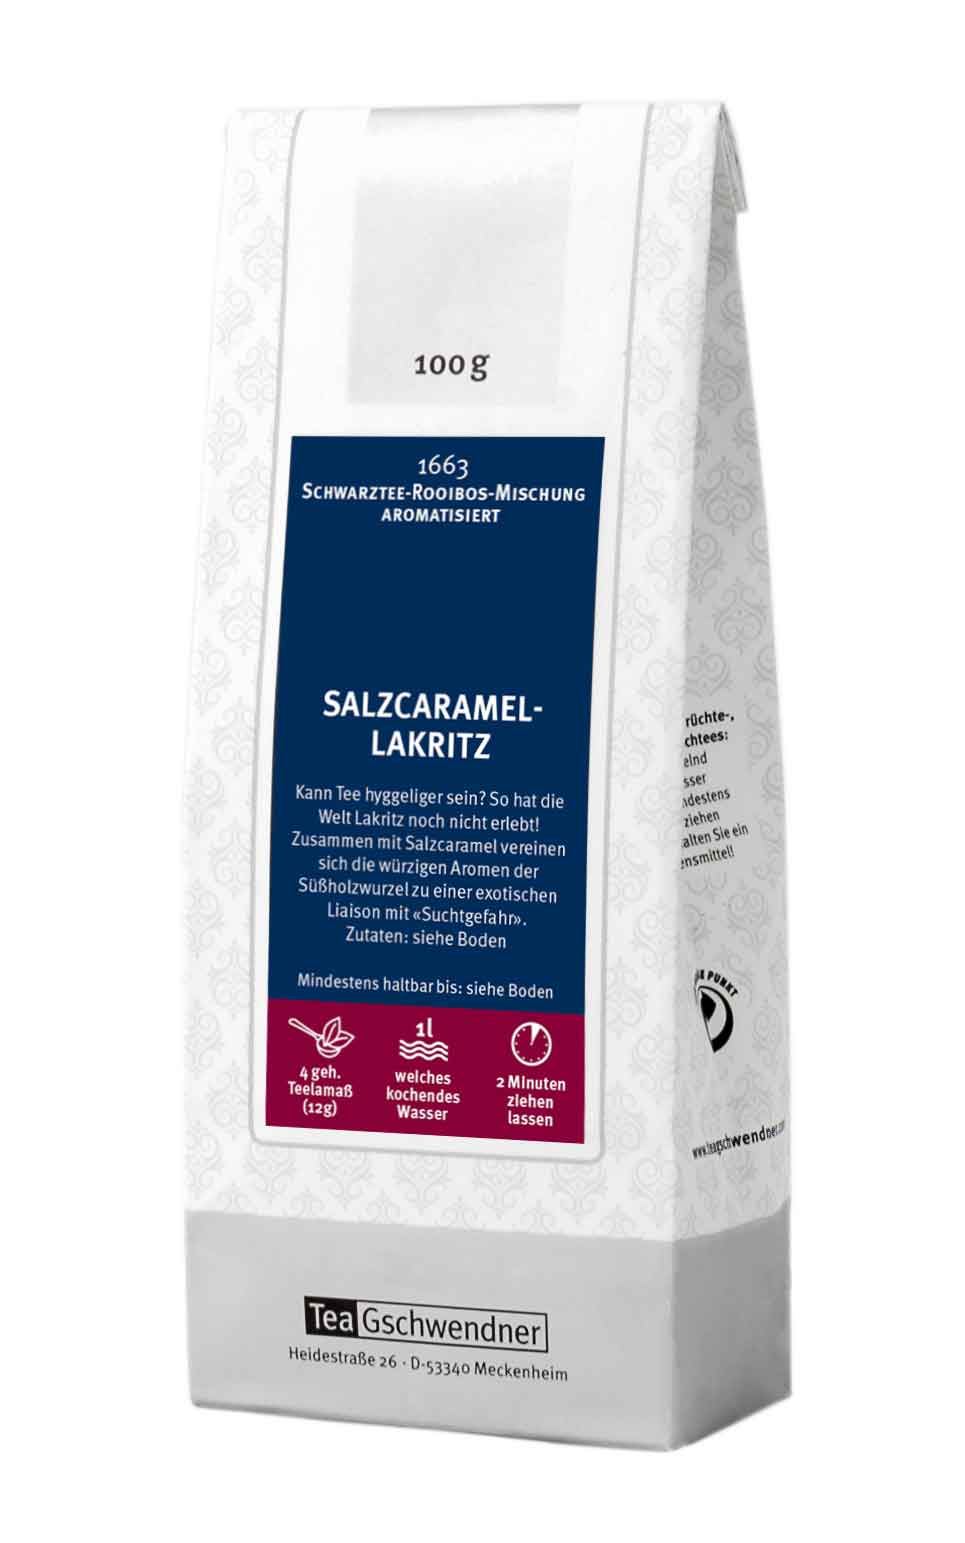 Salzcaramel-Lakritz